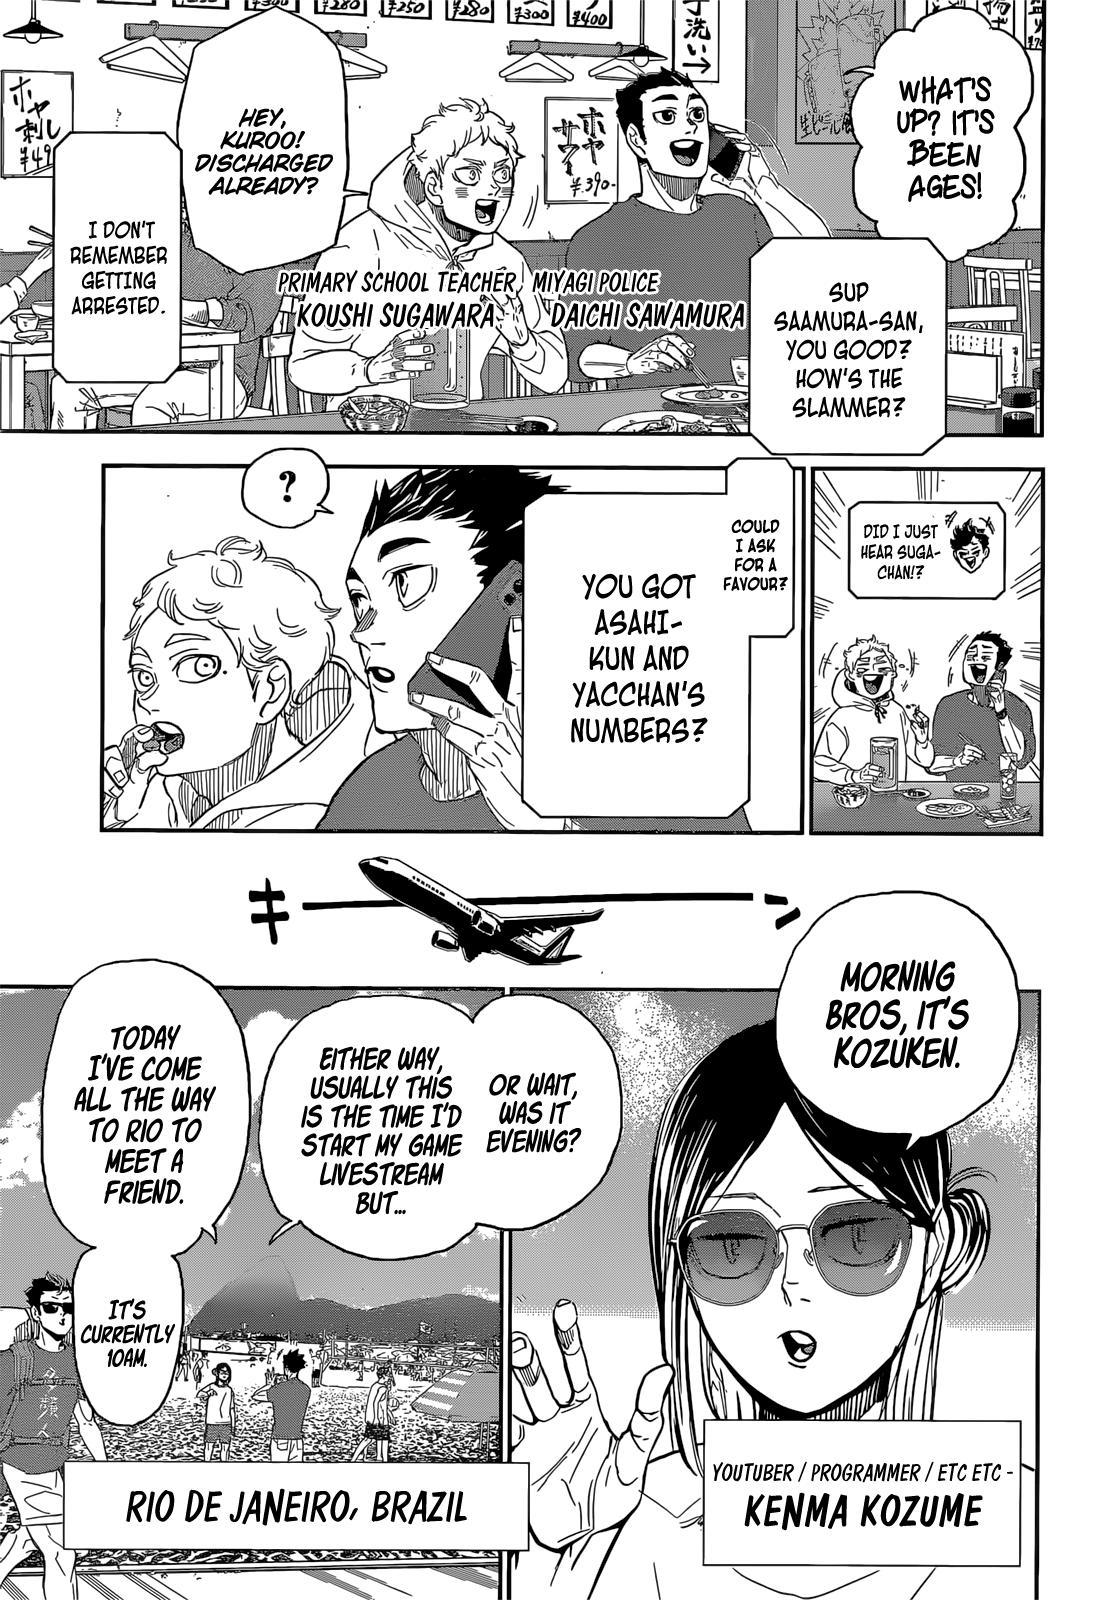 Haikyuu!! Special. : All Star Match page 9 - Mangakakalot